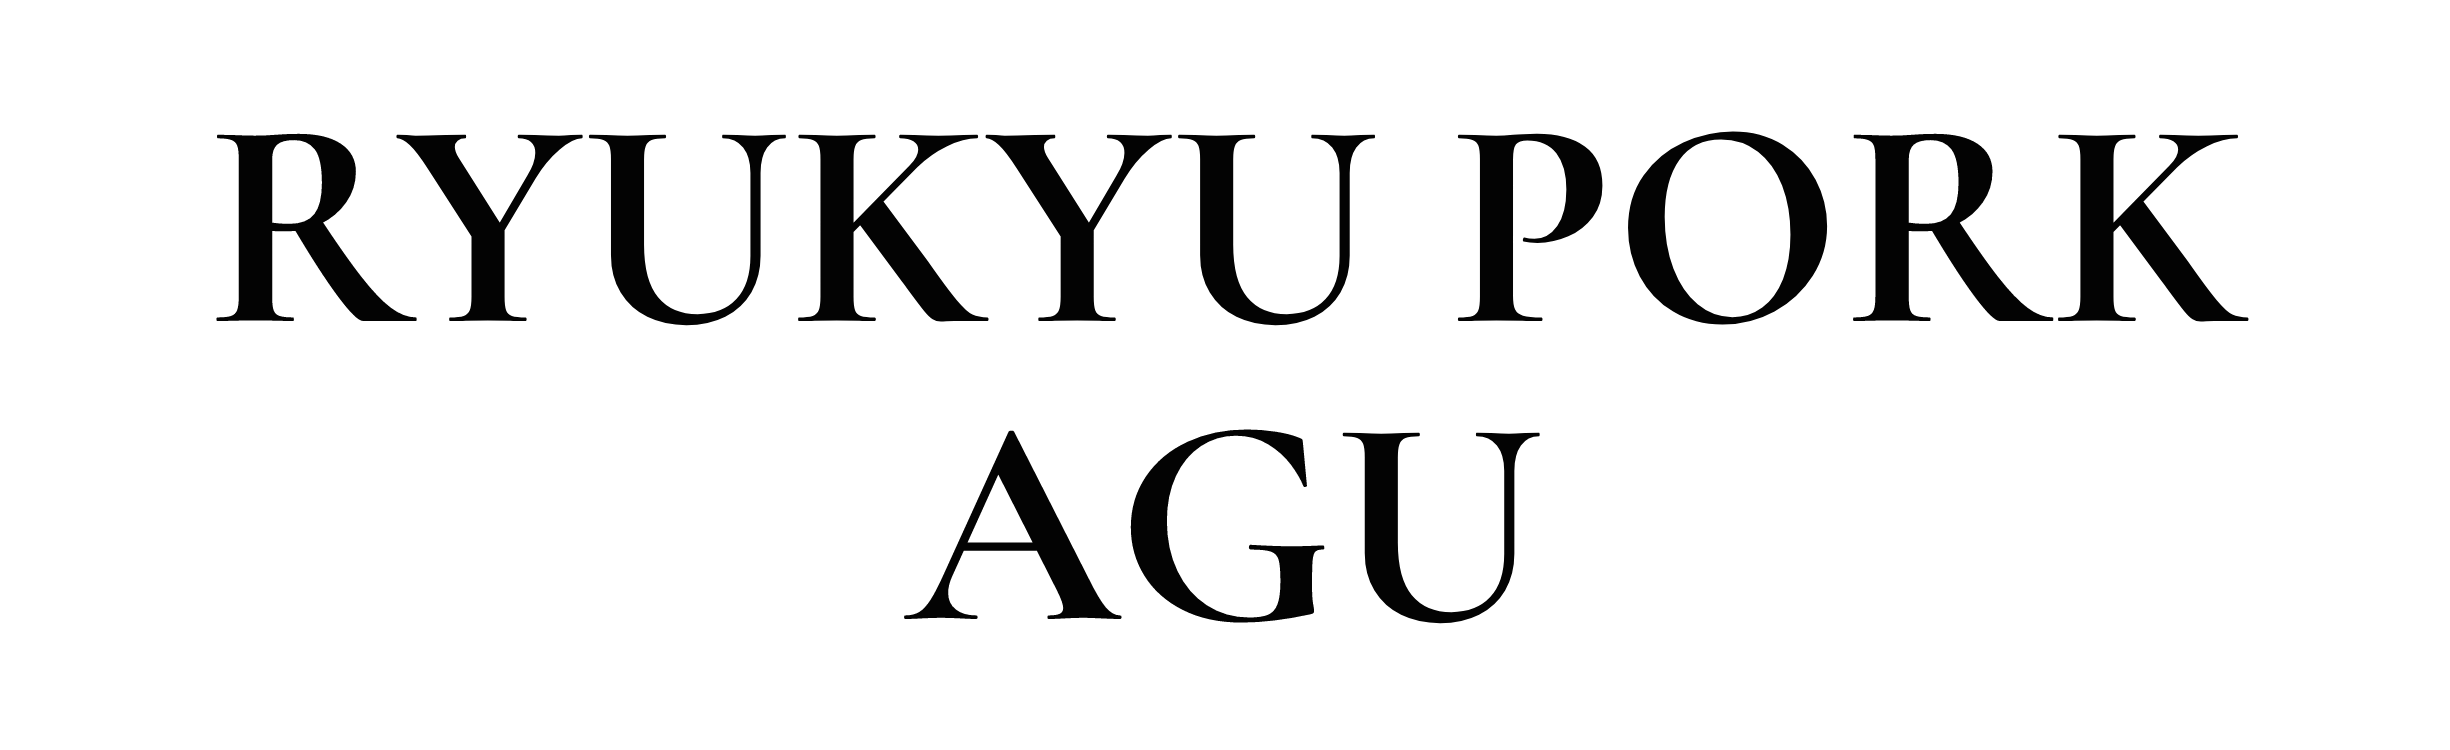 Ryukyu Pork Agu